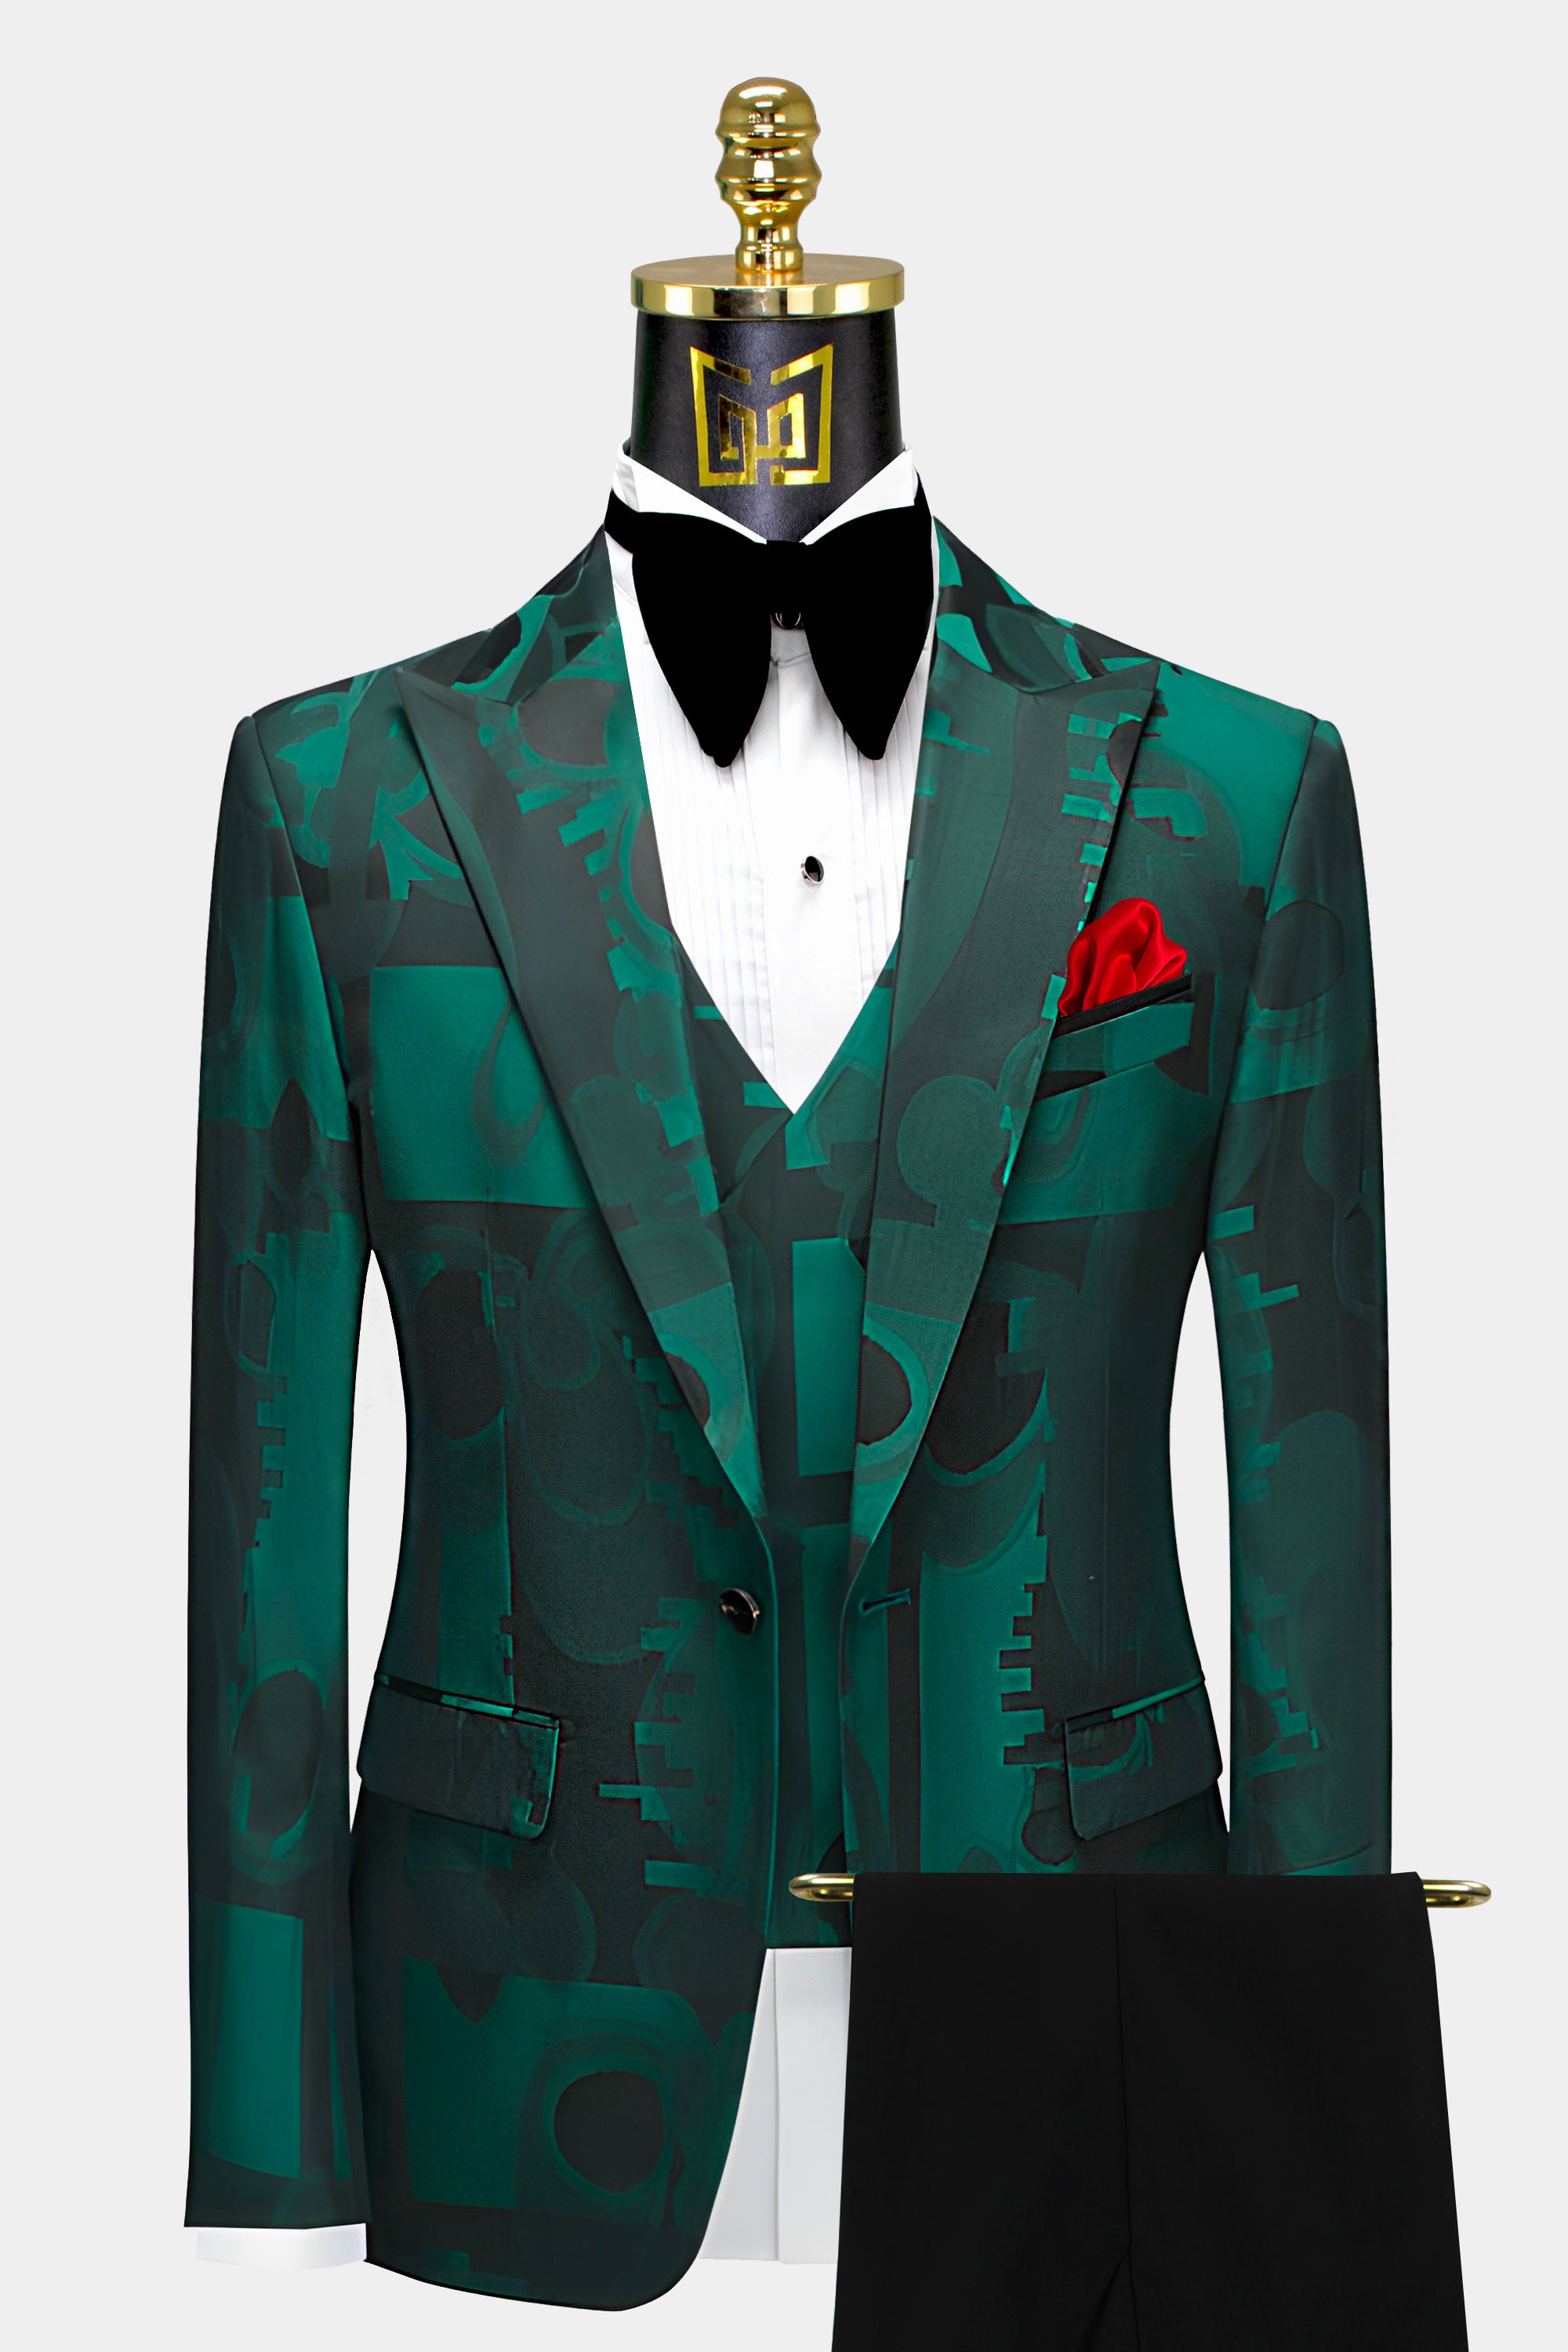 Green-and-Black-Suit-Groom-Wedding-Tuxedo-from-Gentlemansguru.com